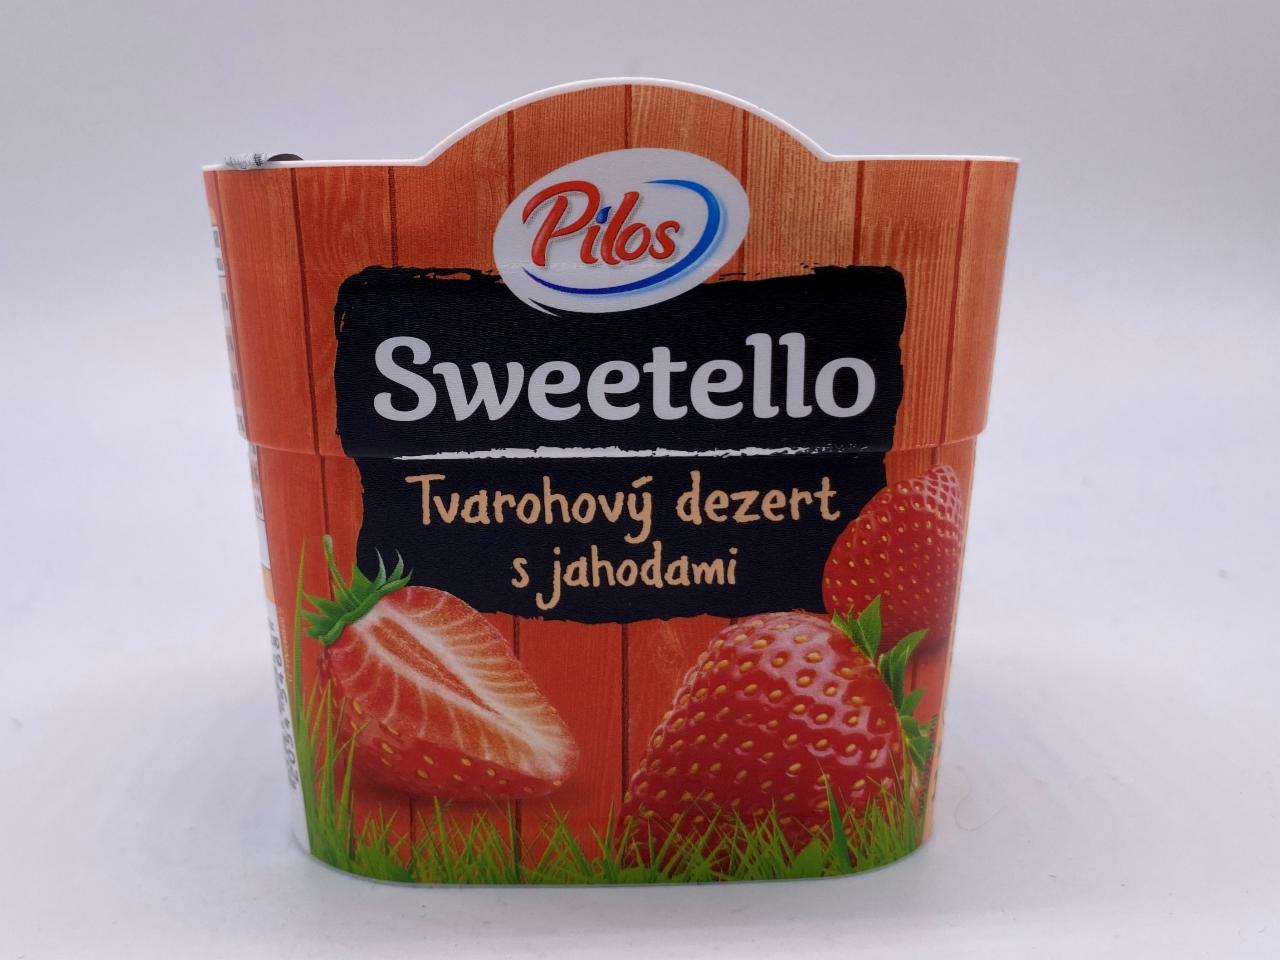 Fotografie - Sweetello tvarohový dezert jahoda